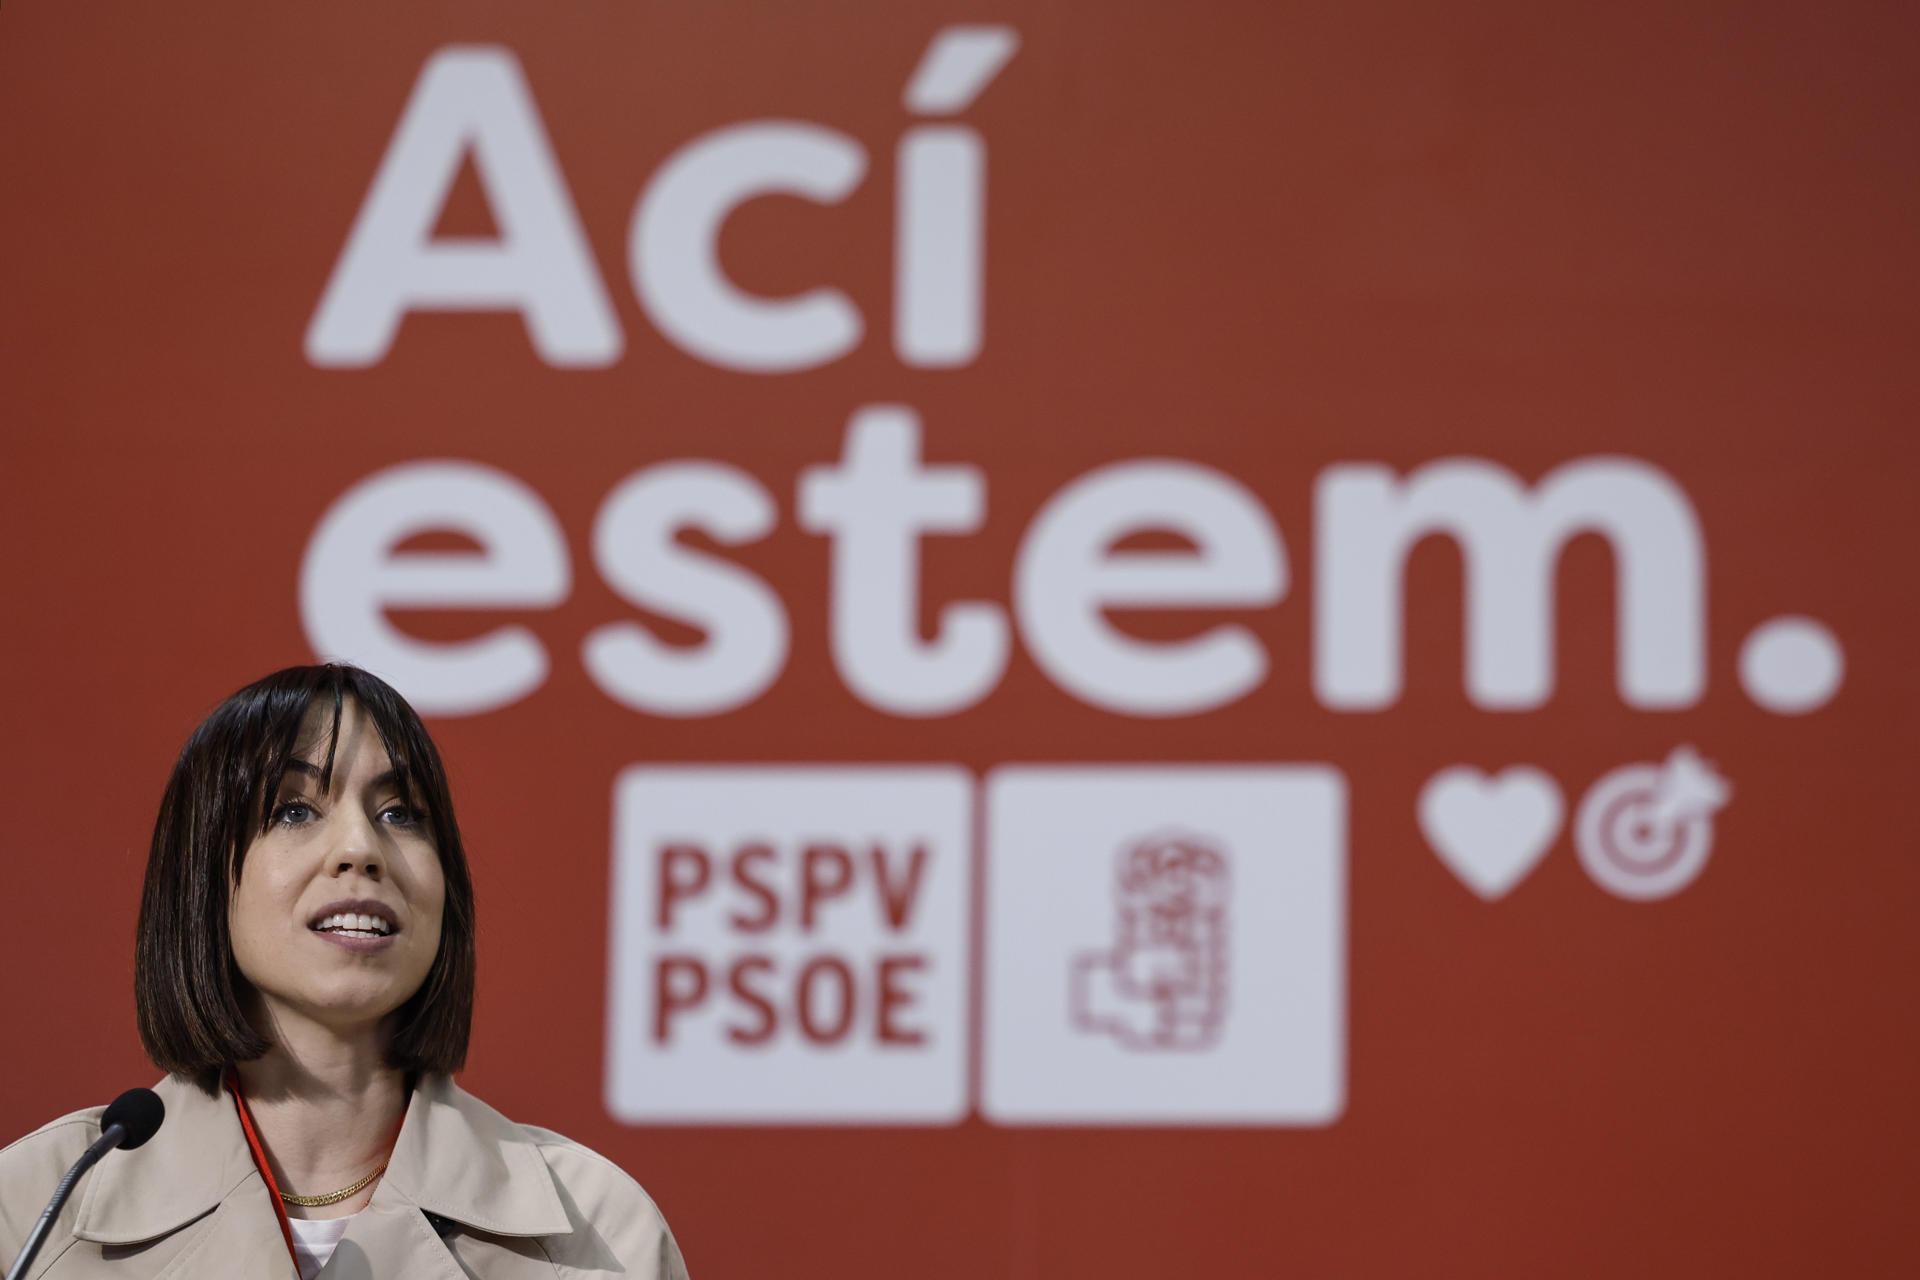 La secretaria general del PSPV-PSOE, Diana Morant, preside el Comité Nacional de los socialistas valencianos. EFE/Biel Aliño
